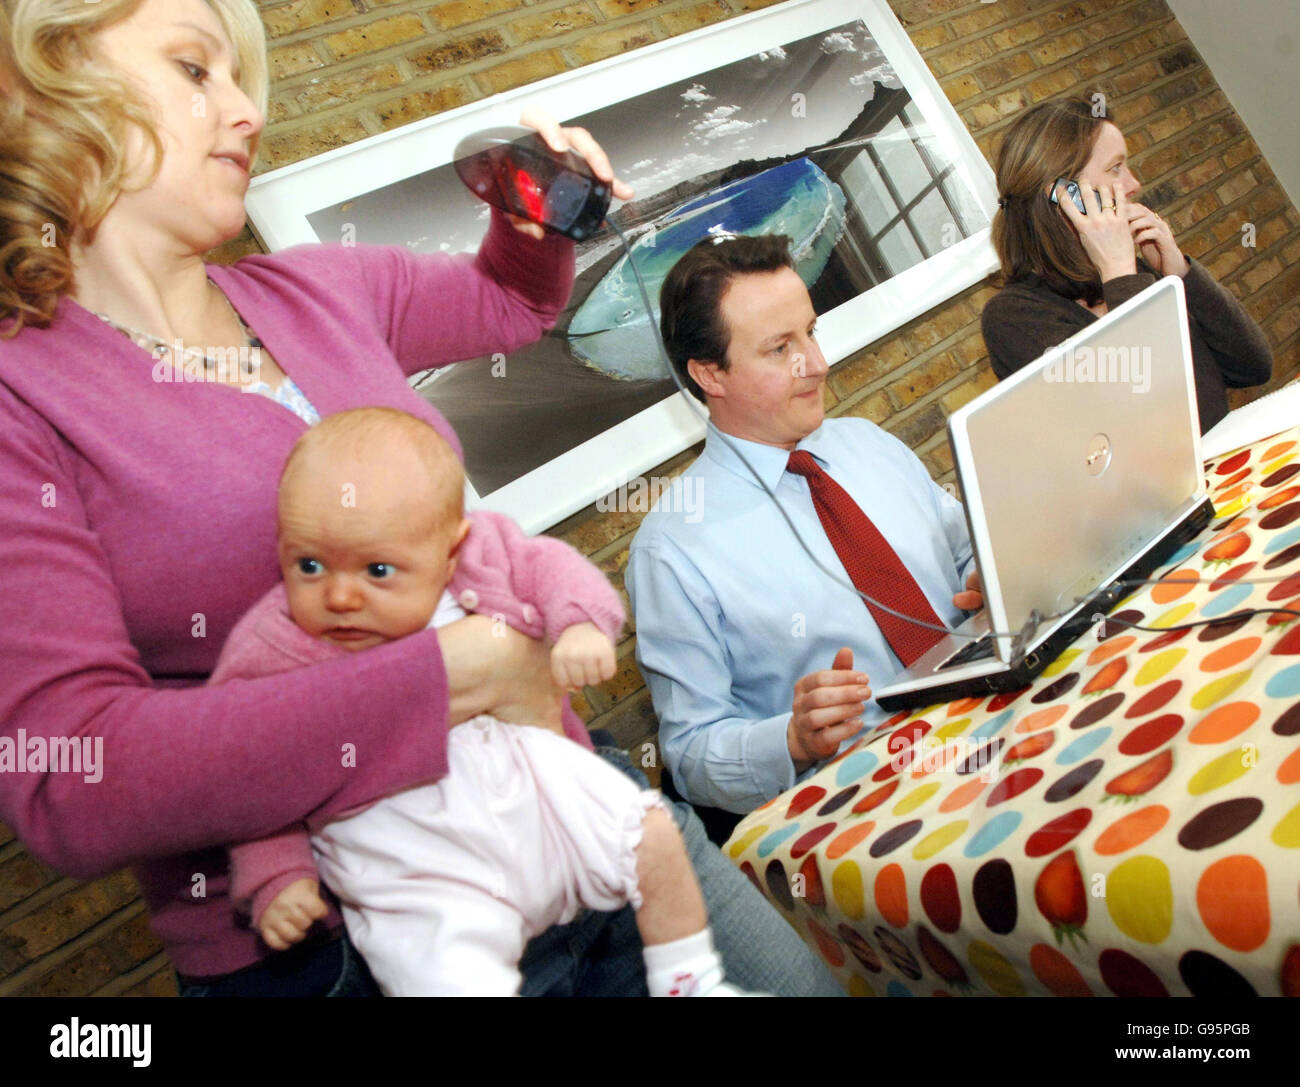 David Cameron, der Vorsitzende der Konservativen Partei, mit Müttern von der mumsnet-Website an seinem ersten Tag zurück bei der Arbeit nach dem Vaterschaftsurlaub Stockfoto